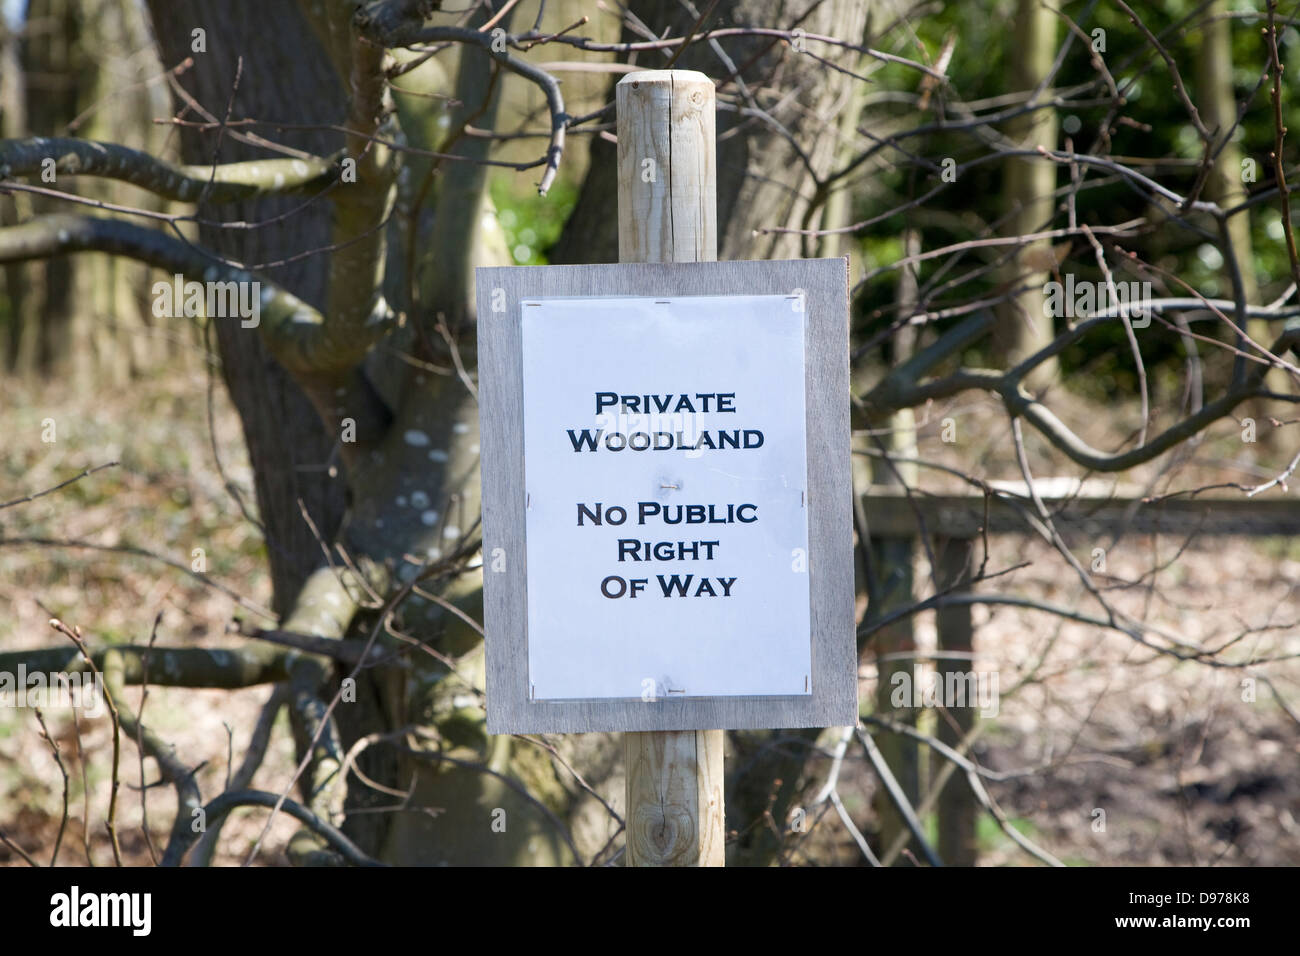 Signe pour bois privés sans droit de passage public, Sutton, Suffolk, Angleterre Banque D'Images